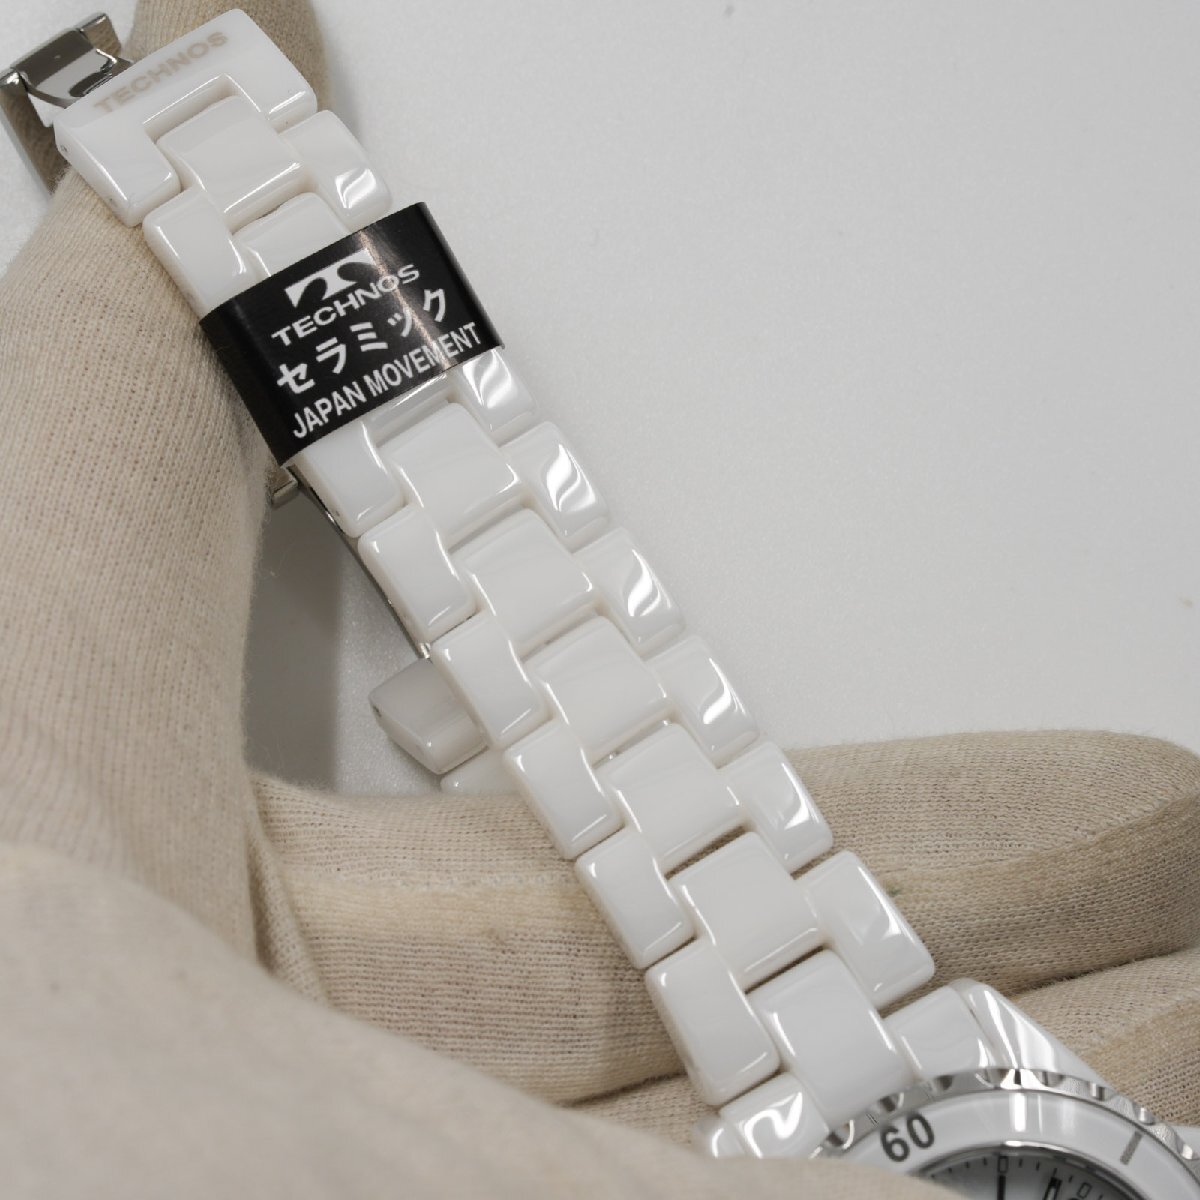  Tecnos TECHNOS наручные часы T9B82TW J12 модель белый керамика кварц мужской не использовался товар [ качество iko-]